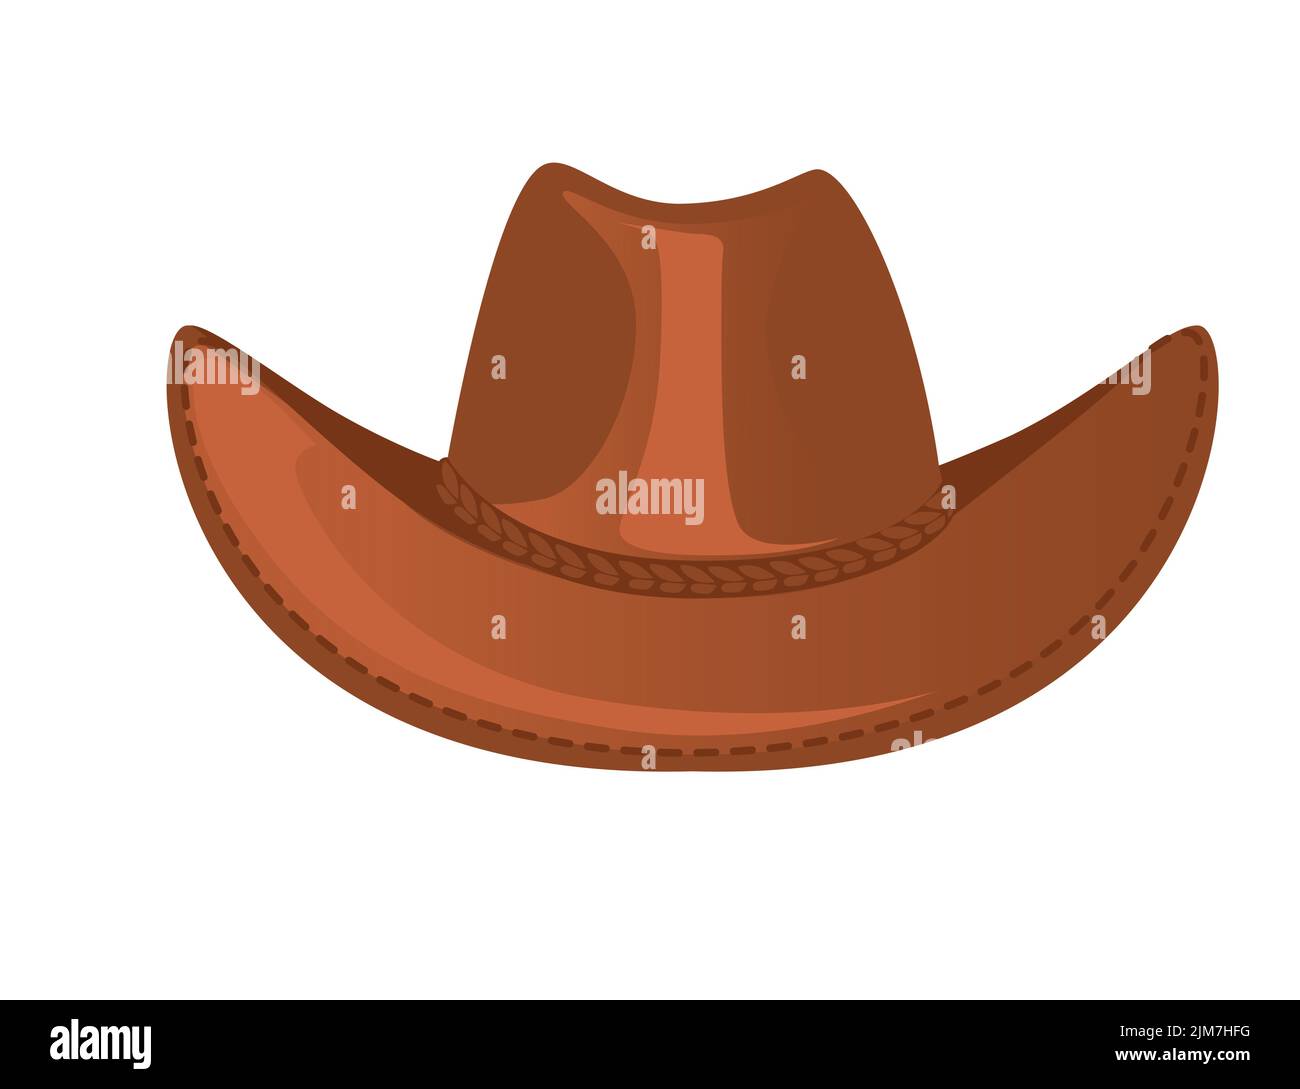 Ilustración vectorial de sombrero vaquero de piel de color marrón aislada sobre fondo blanco. Ilustración del Vector